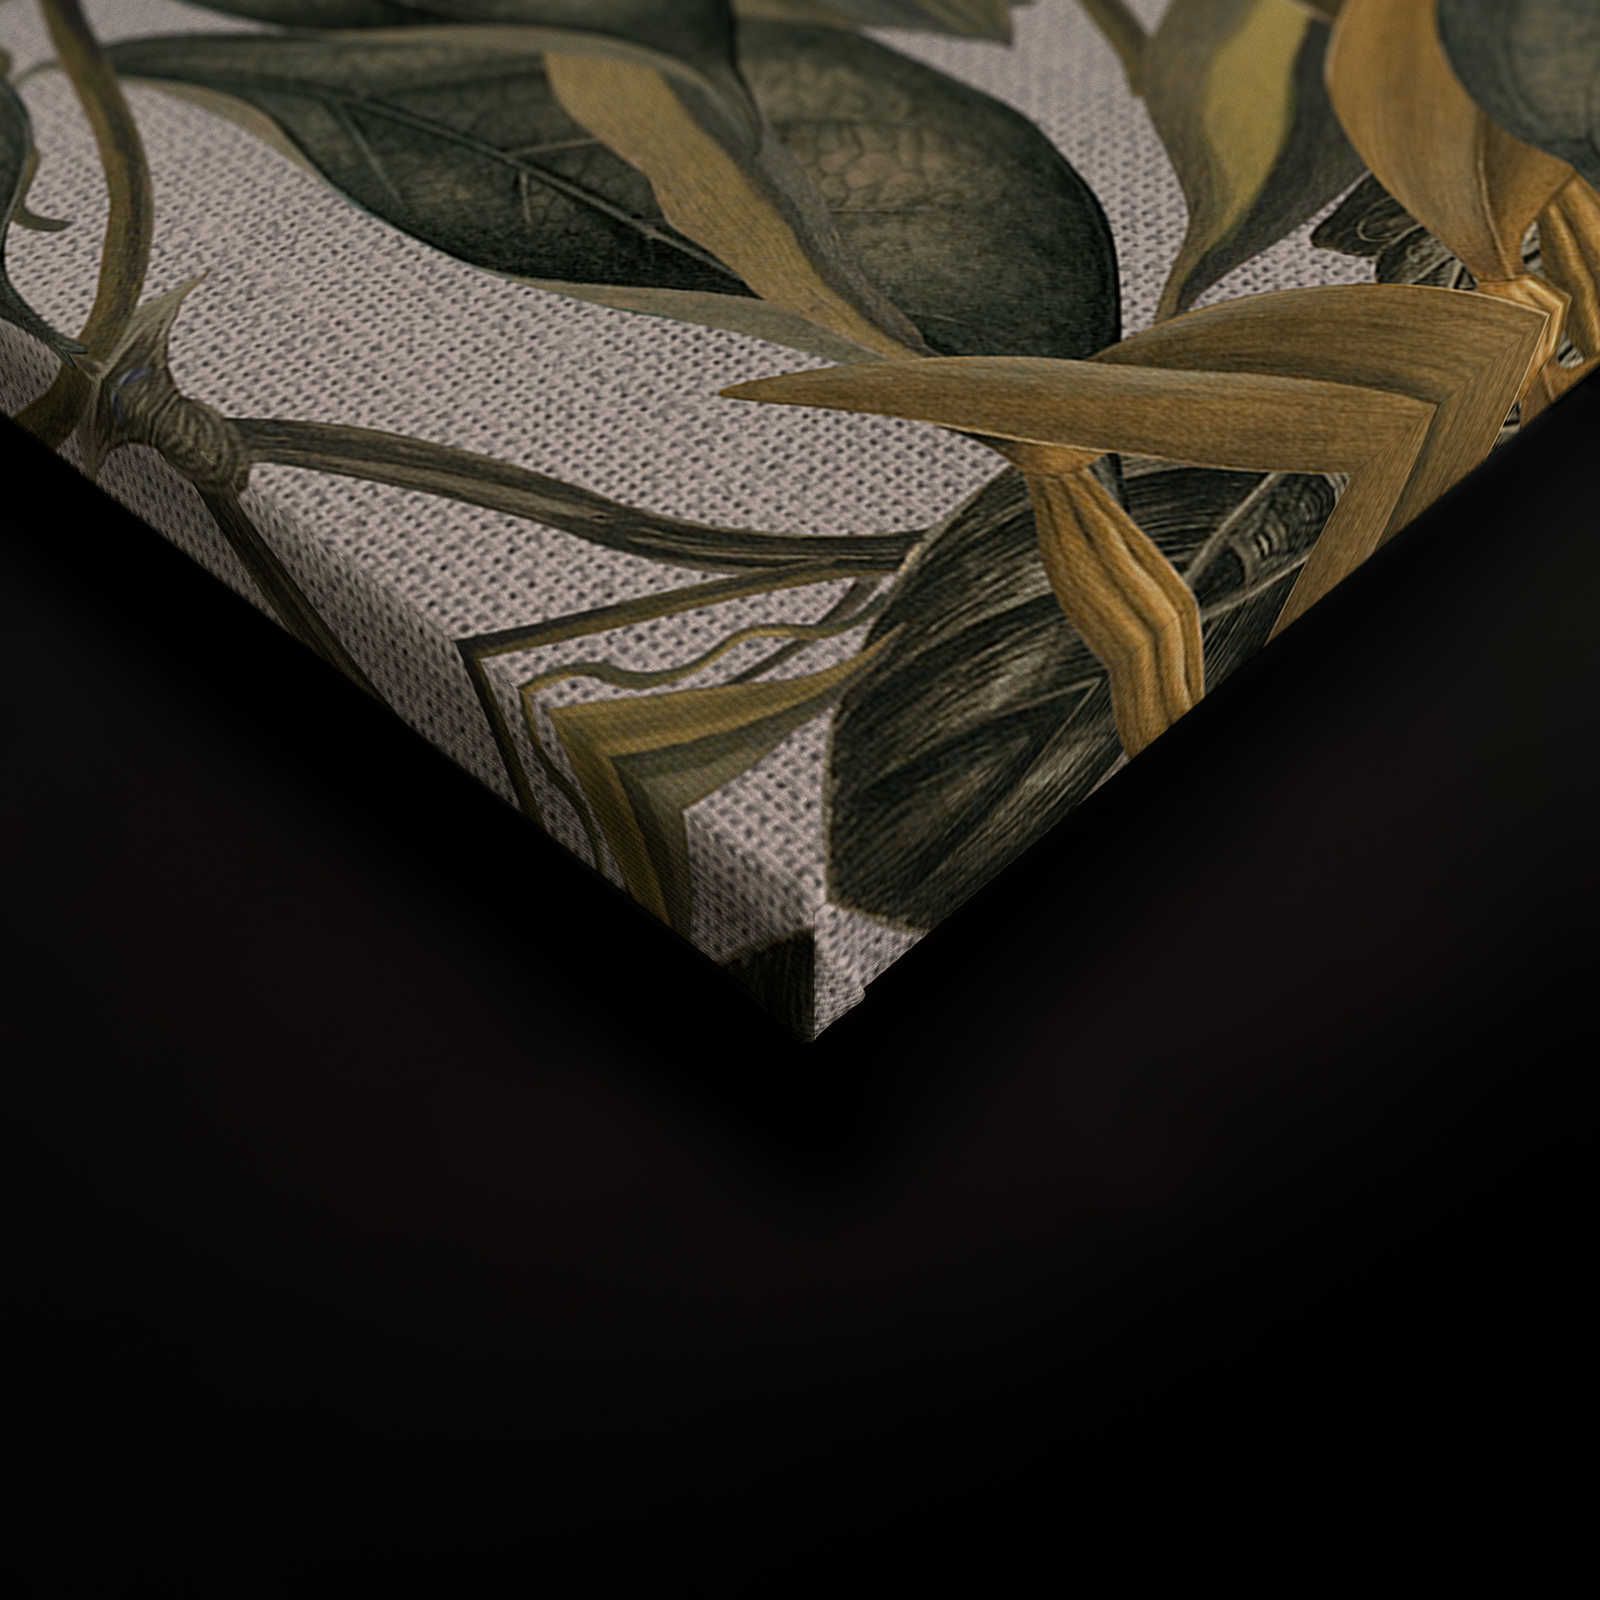             Tableau toile style botanique fleurs, feuilles & look textile - 0,90 m x 0,60 m
        